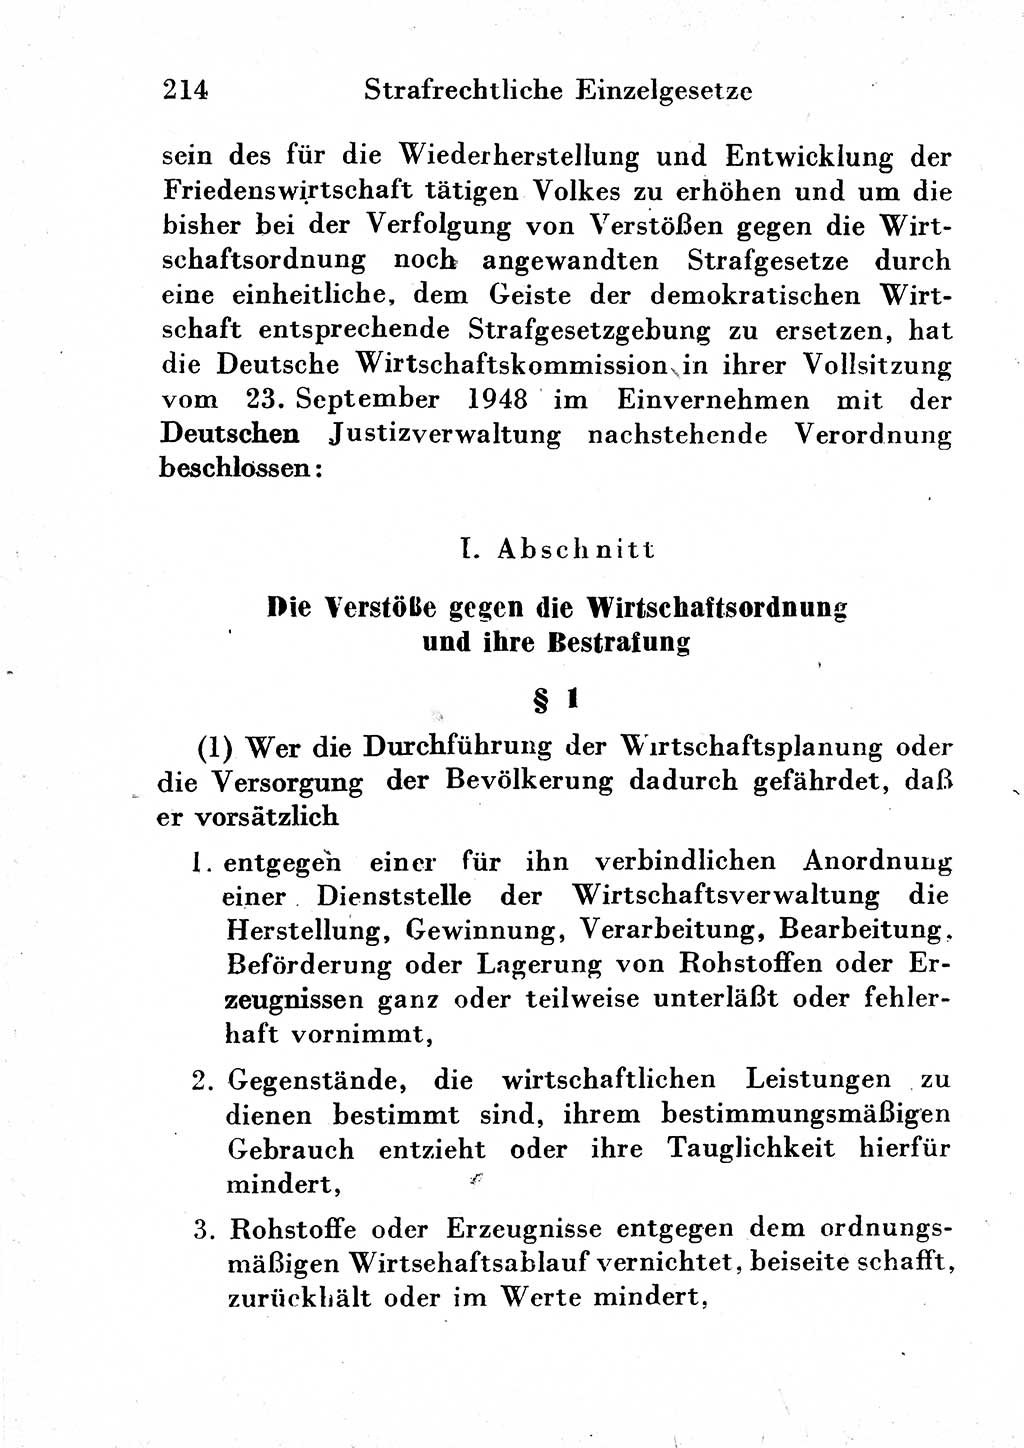 Strafgesetzbuch (StGB) und andere Strafgesetze [Deutsche Demokratische Republik (DDR)] 1954, Seite 214 (StGB Strafges. DDR 1954, S. 214)